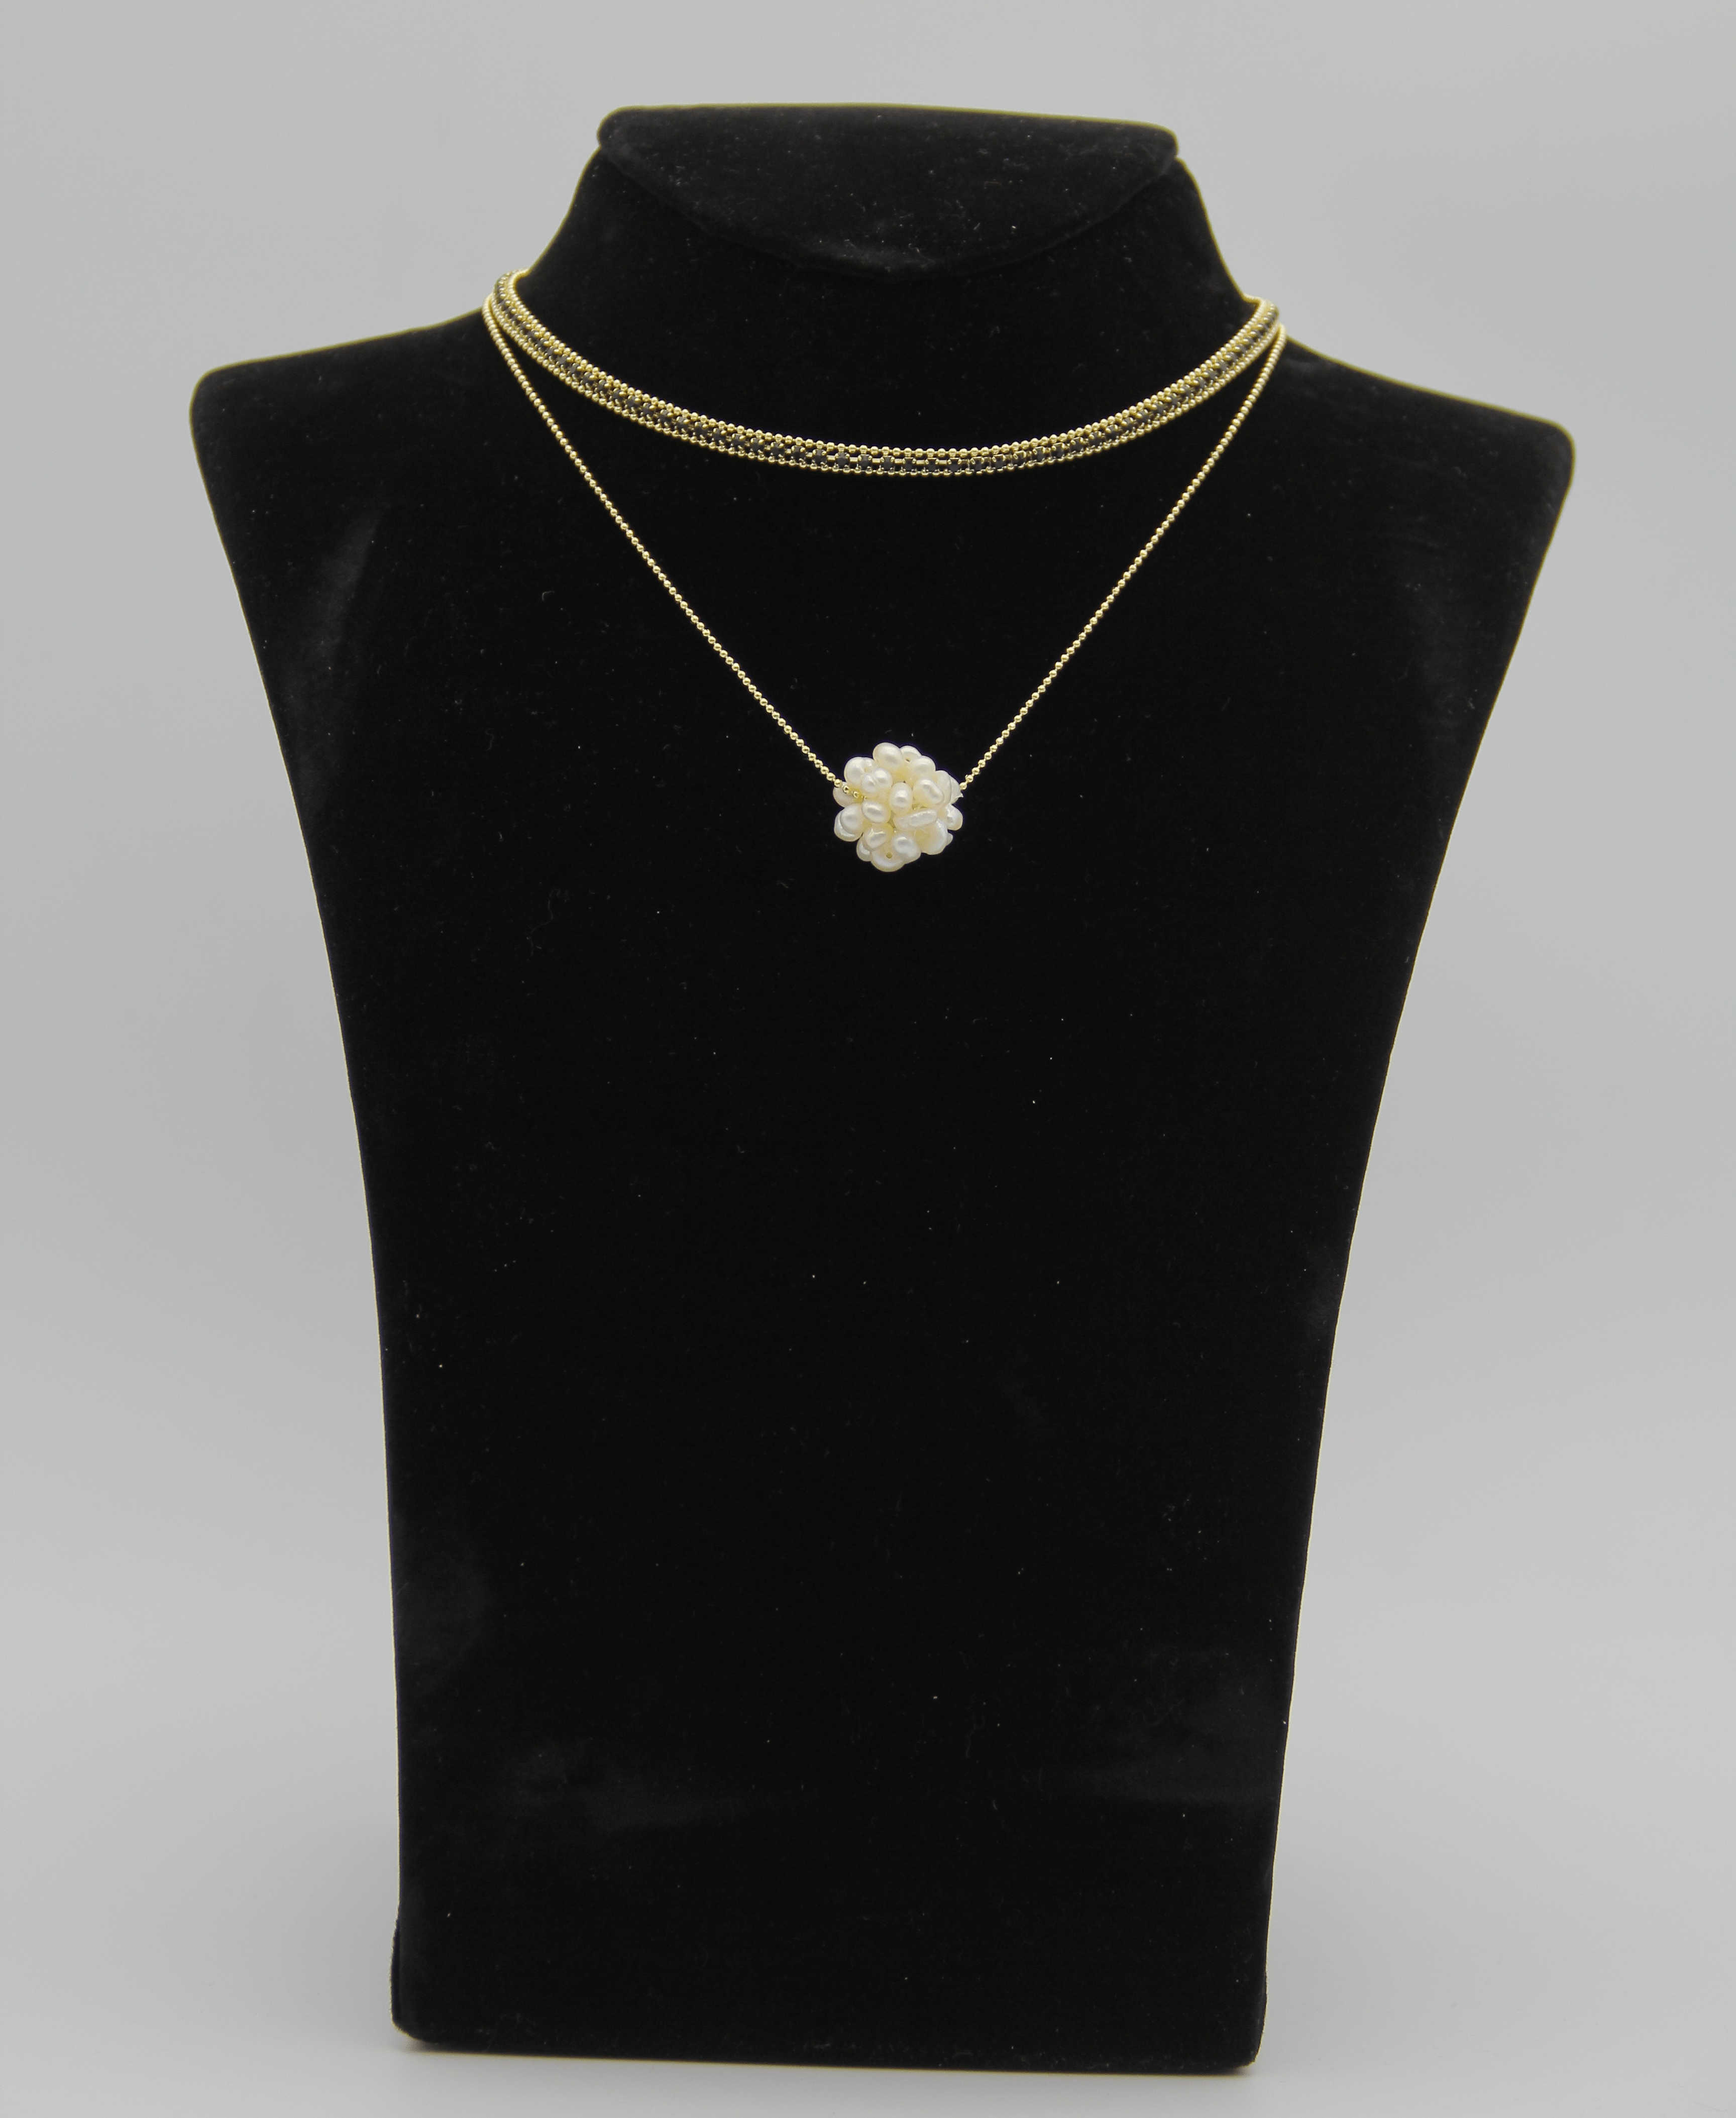 Outlet W&B Female Necklaces Medium - Flowers Pendant - Necklace